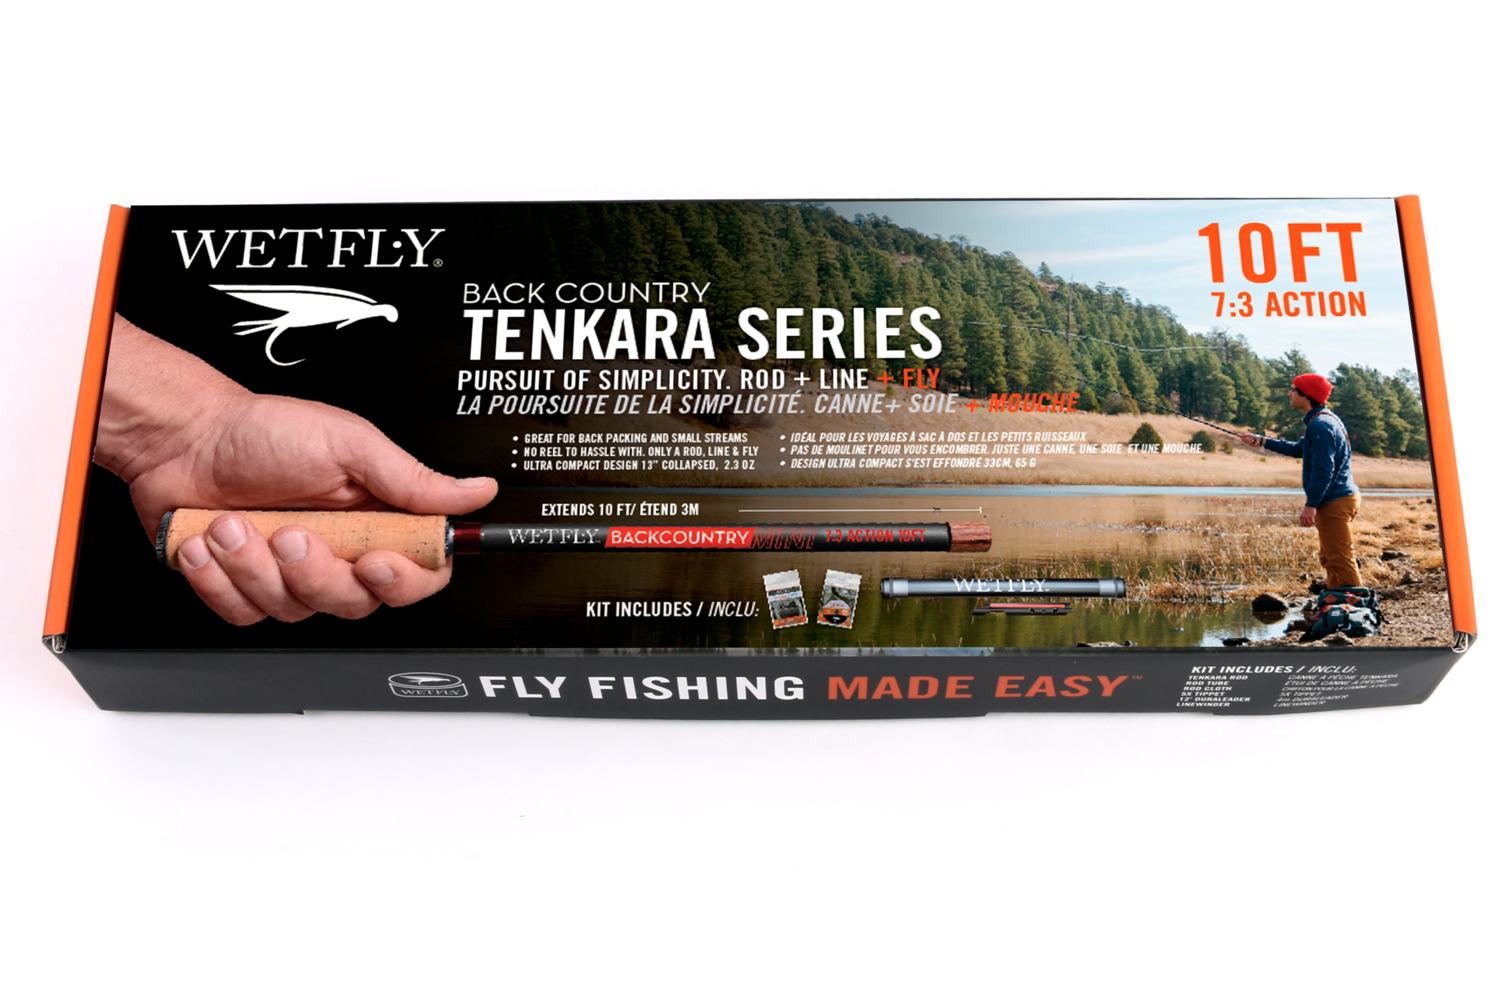 Wetfly Backcountry Tenkara Mini Kit, 10